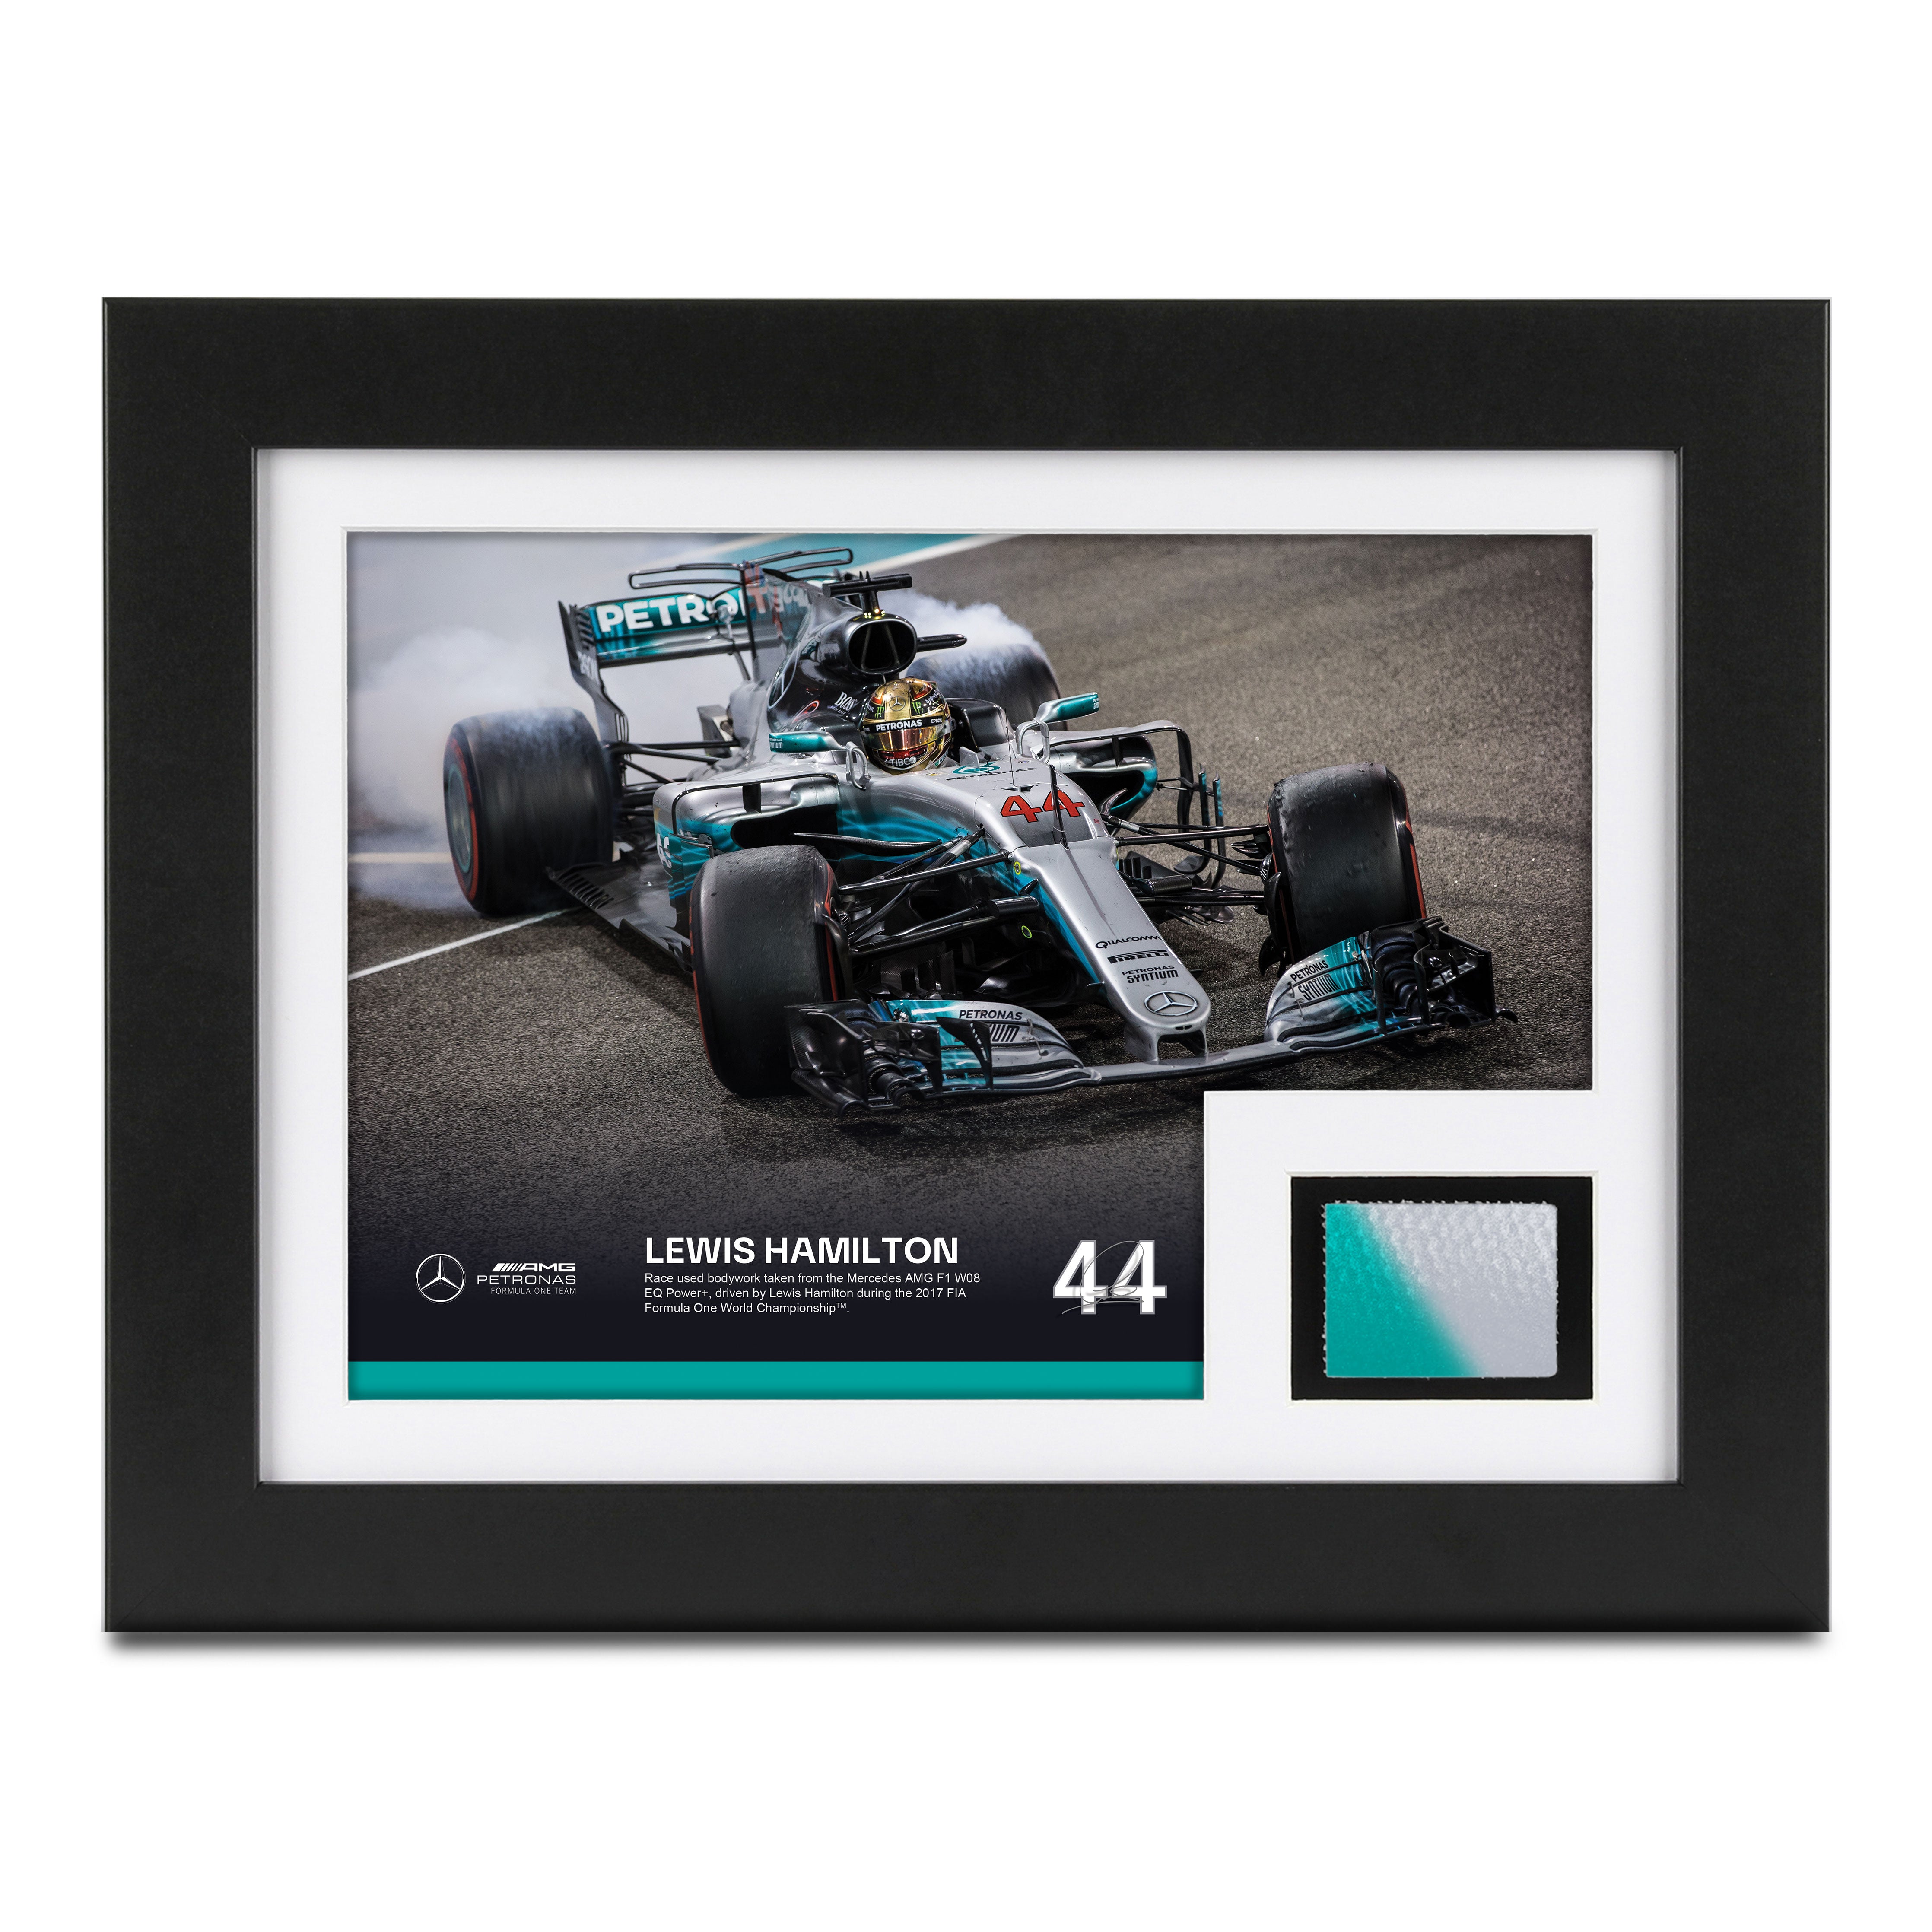 Lewis Hamilton 2017 Bodywork & Photo - Abu Dhabi GP